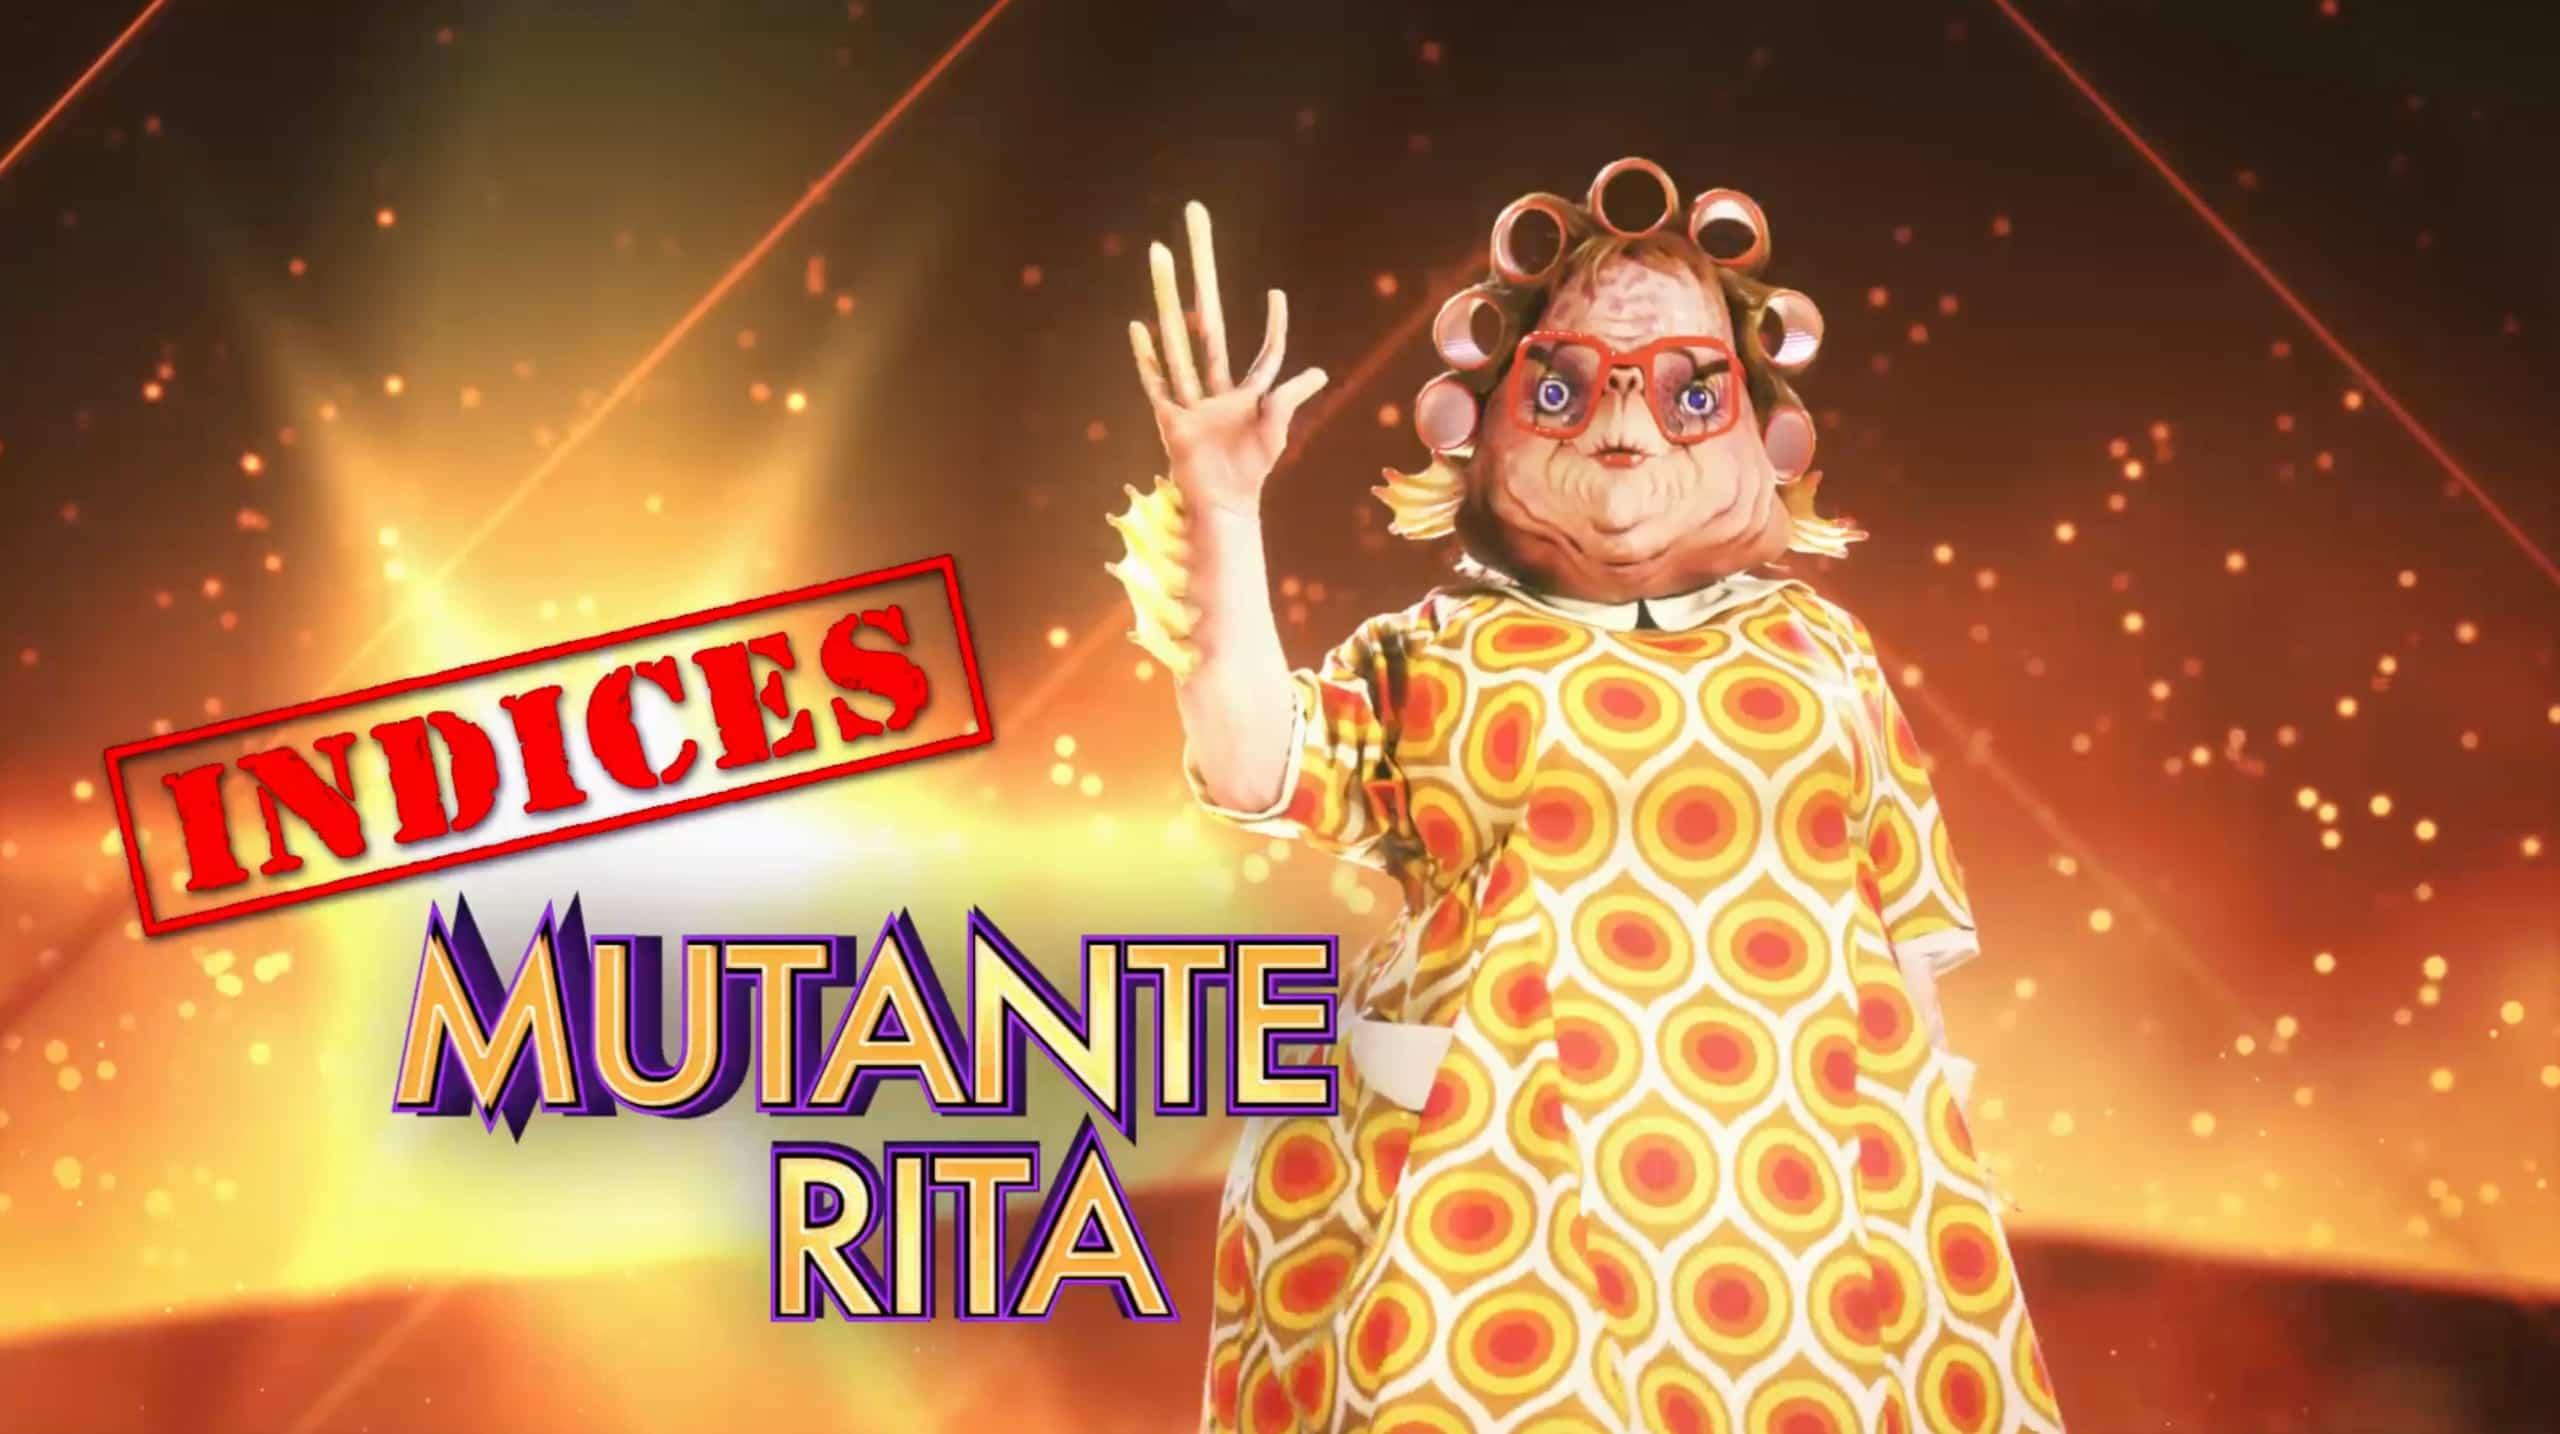 Mutante Rita - Indices 6